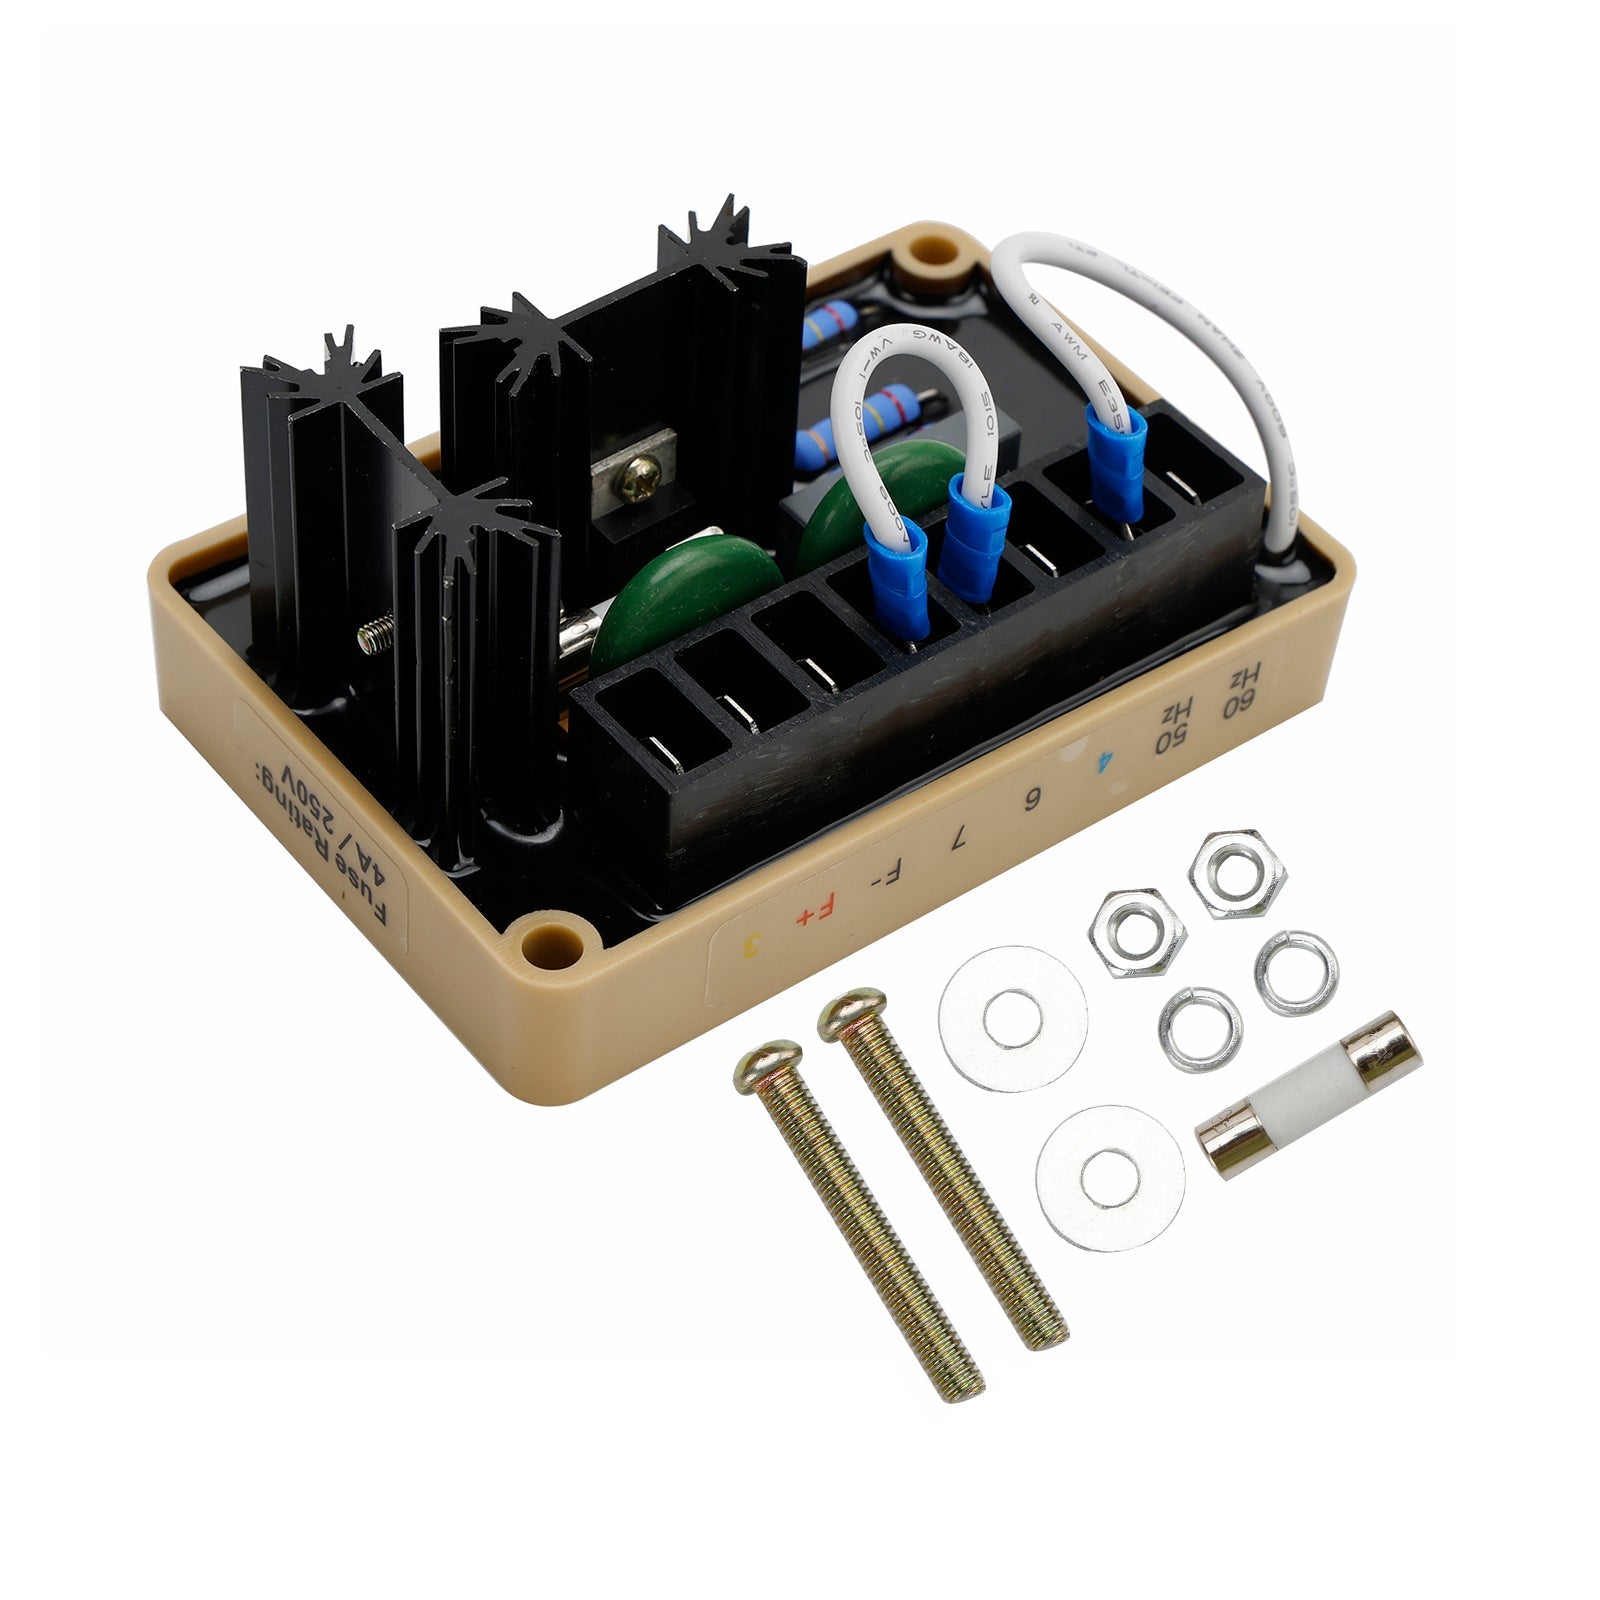 Régulateur de tension automatique AVR SE350 compatible avec le générateur Marathon